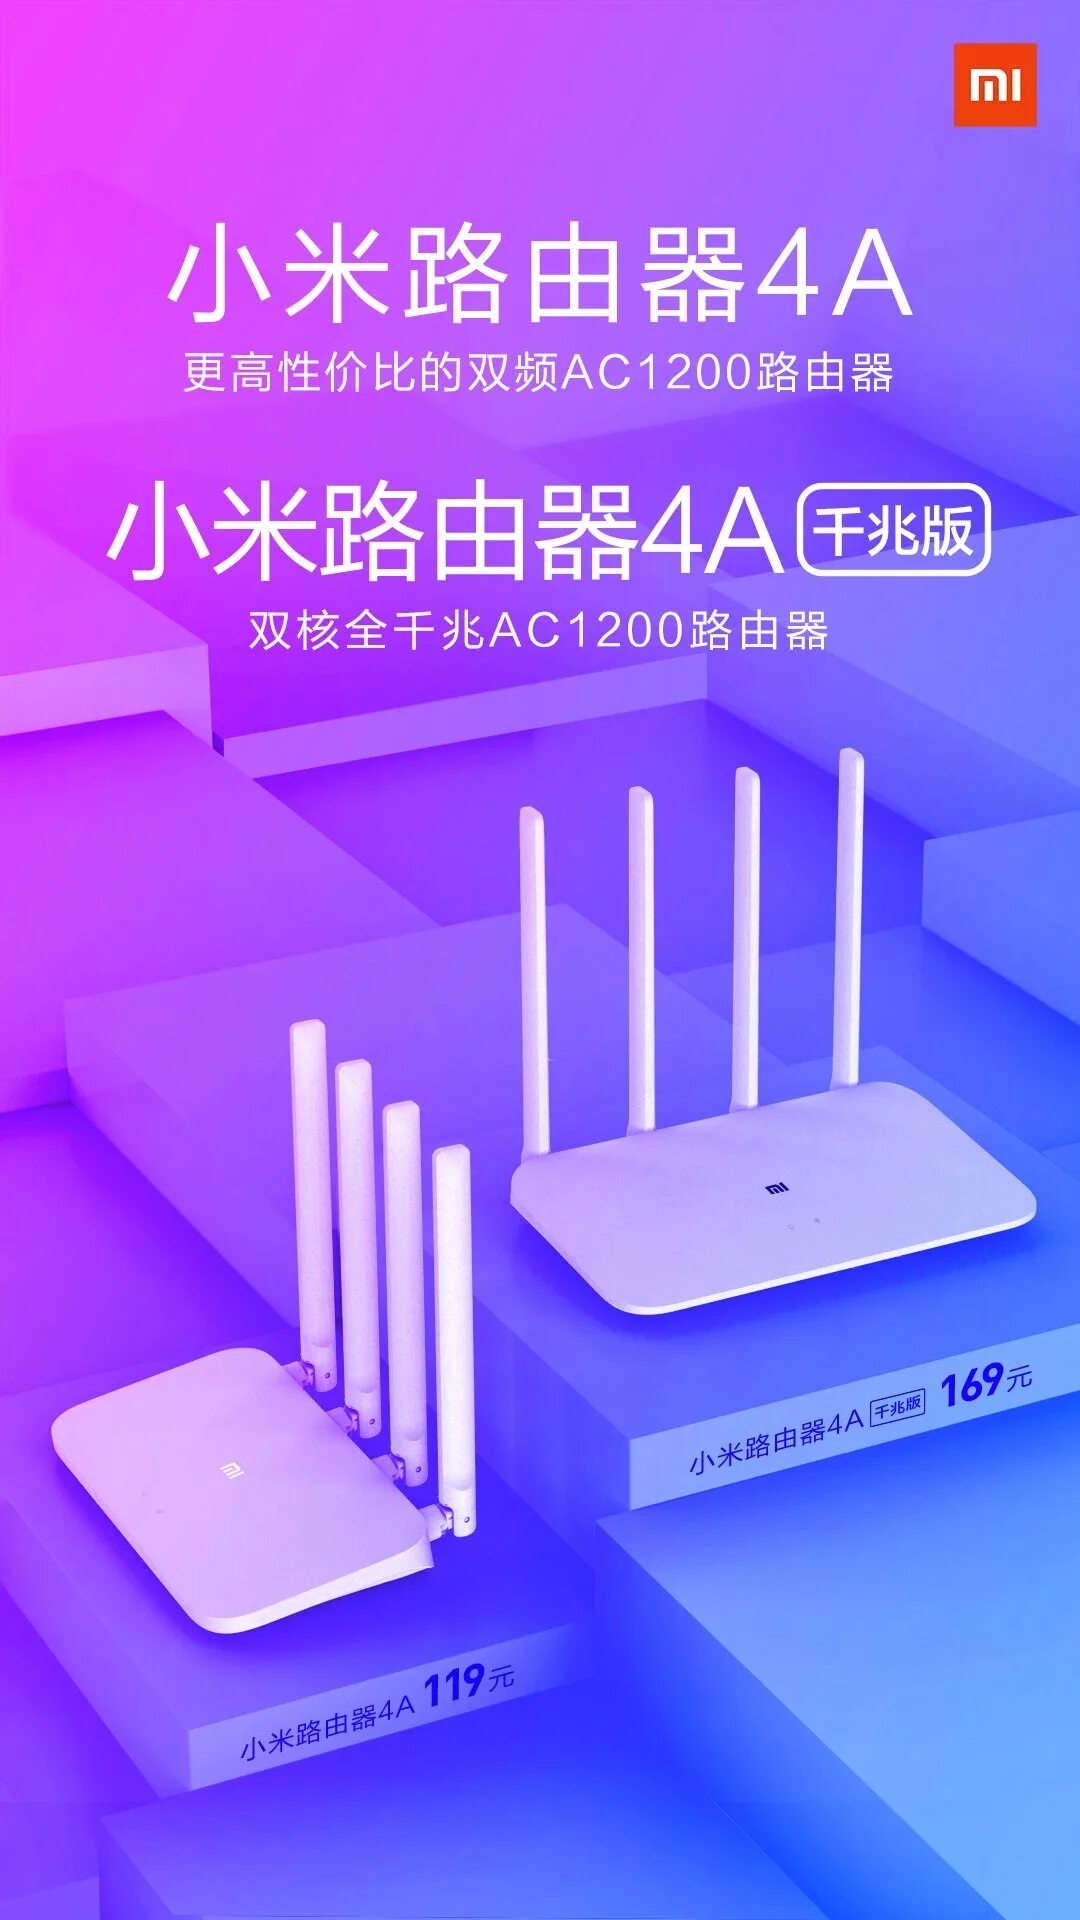 Wifi router 4a gigabit edition. Xiaomi 4a роутер. Xiaomi mi Wi-Fi Router 4a. Xiaomi mi Router 4a Gigabit Edition. WIFI роутер Xiaomi 4a.